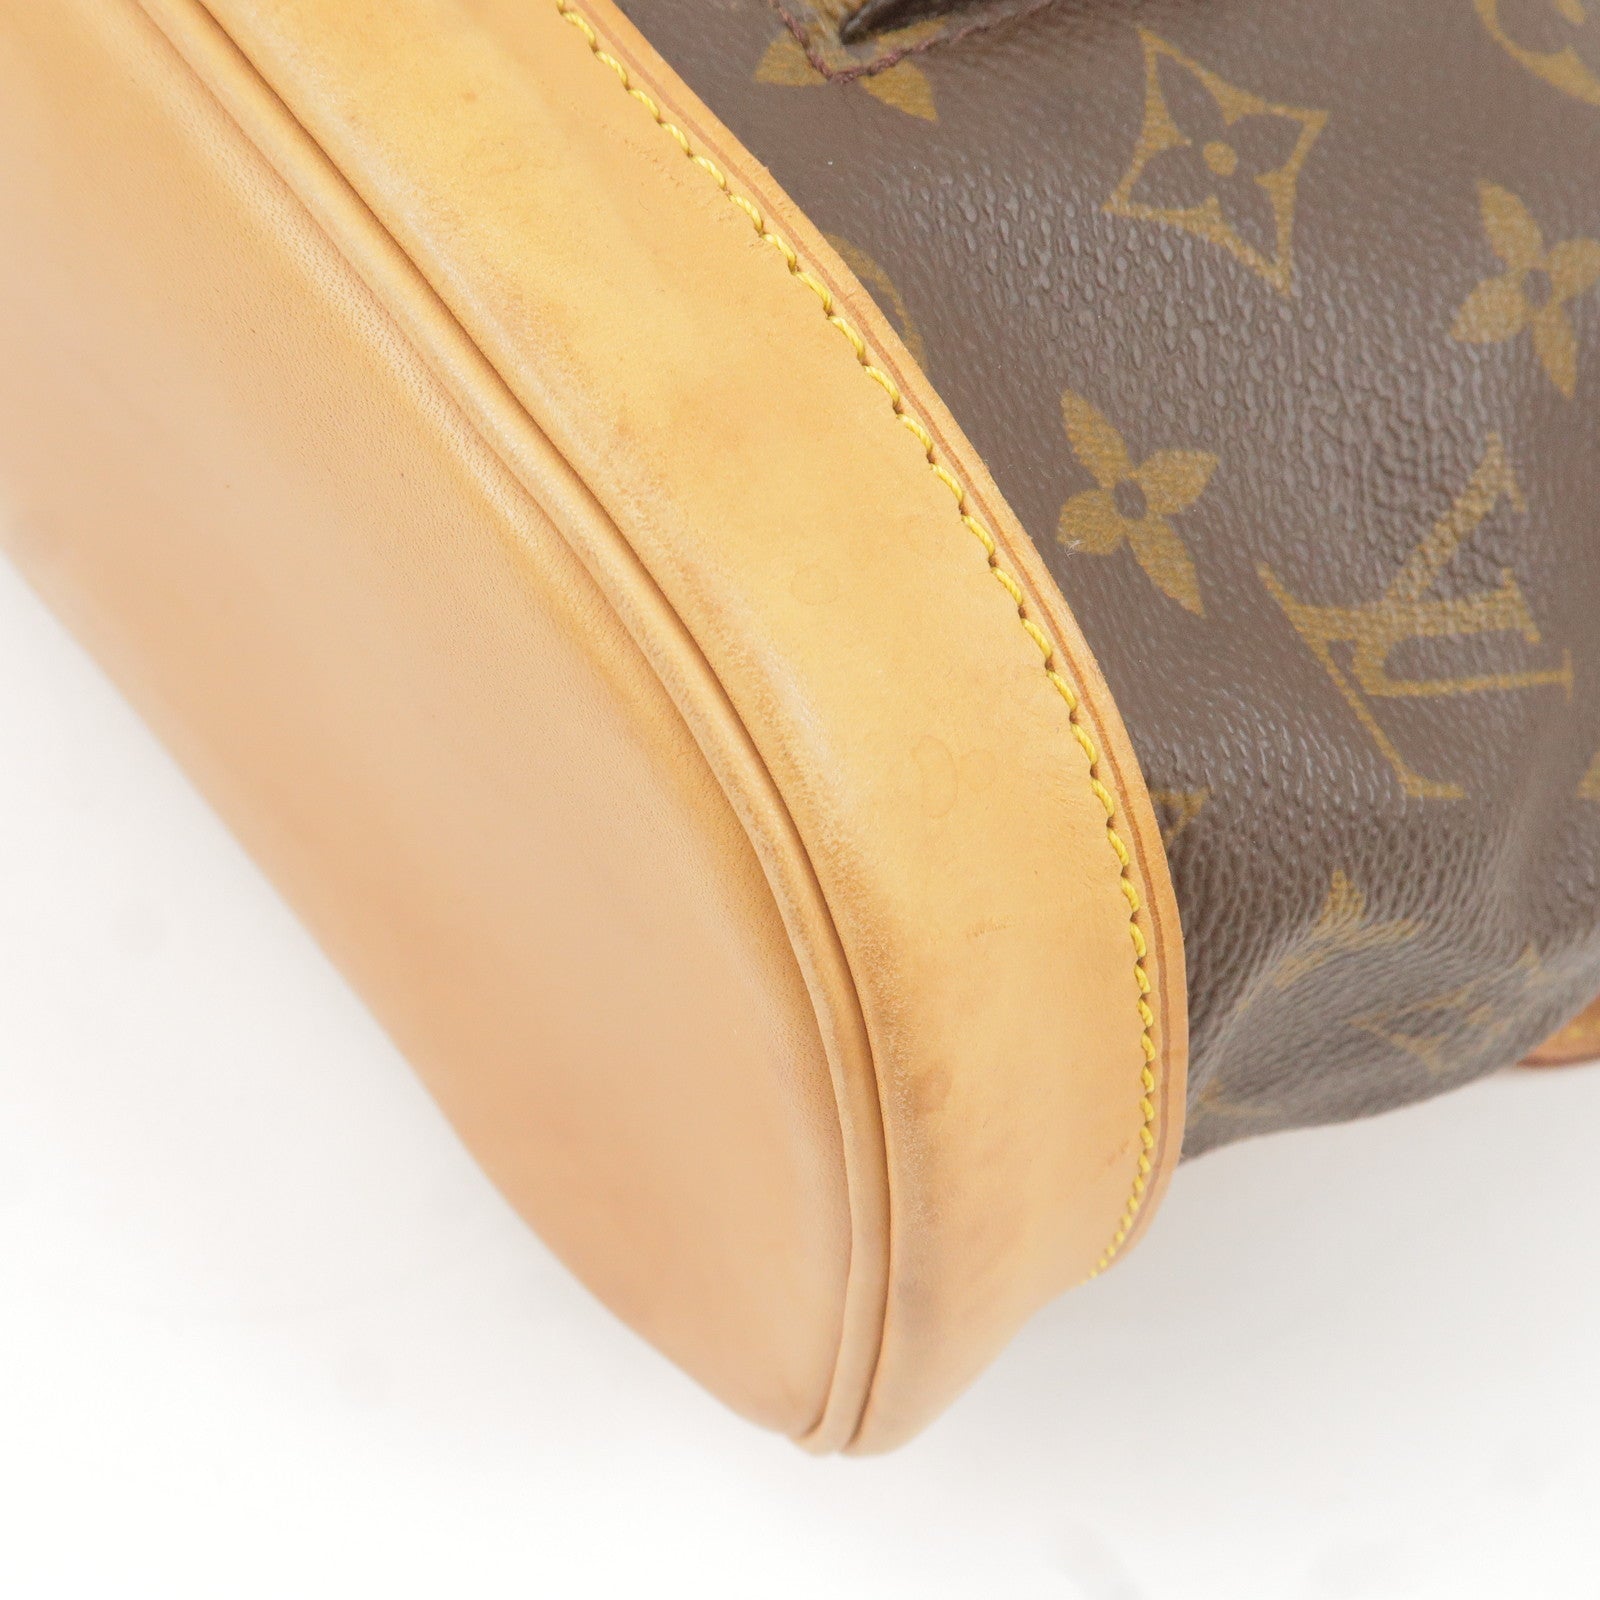 Vuitton - M51135 – dct - Montsouris - Monogram - Pack - Back - GM - ep_vintage  luxury Store - Louis - louis vuitton damier portefeuille viennois wallet